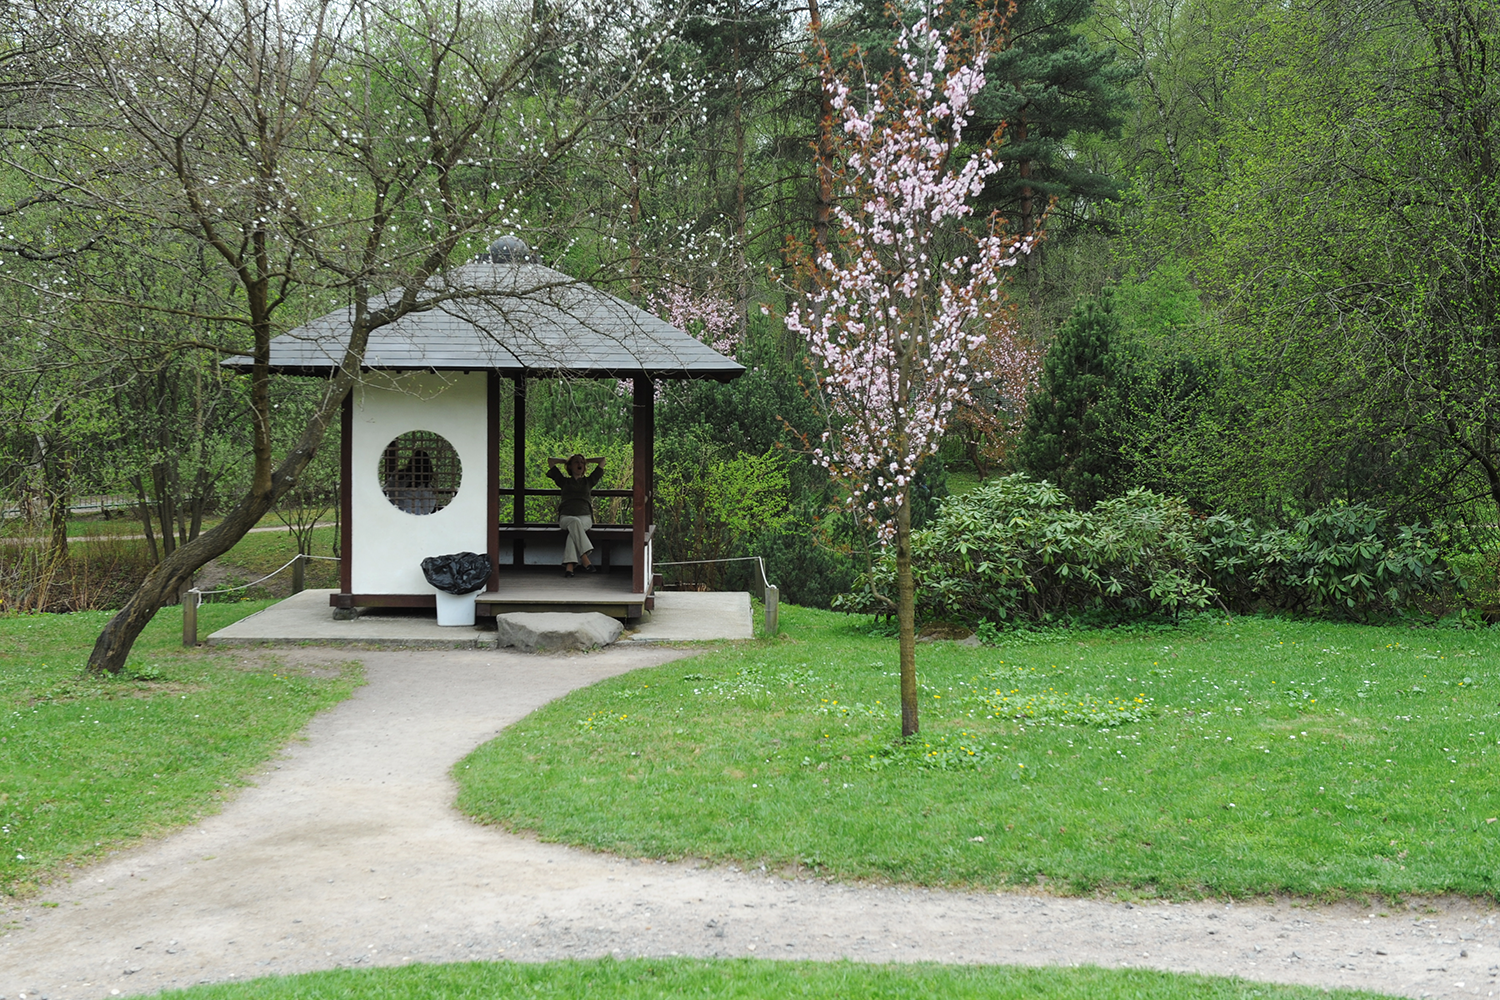 Фото японский сад в ботаническом саду фото